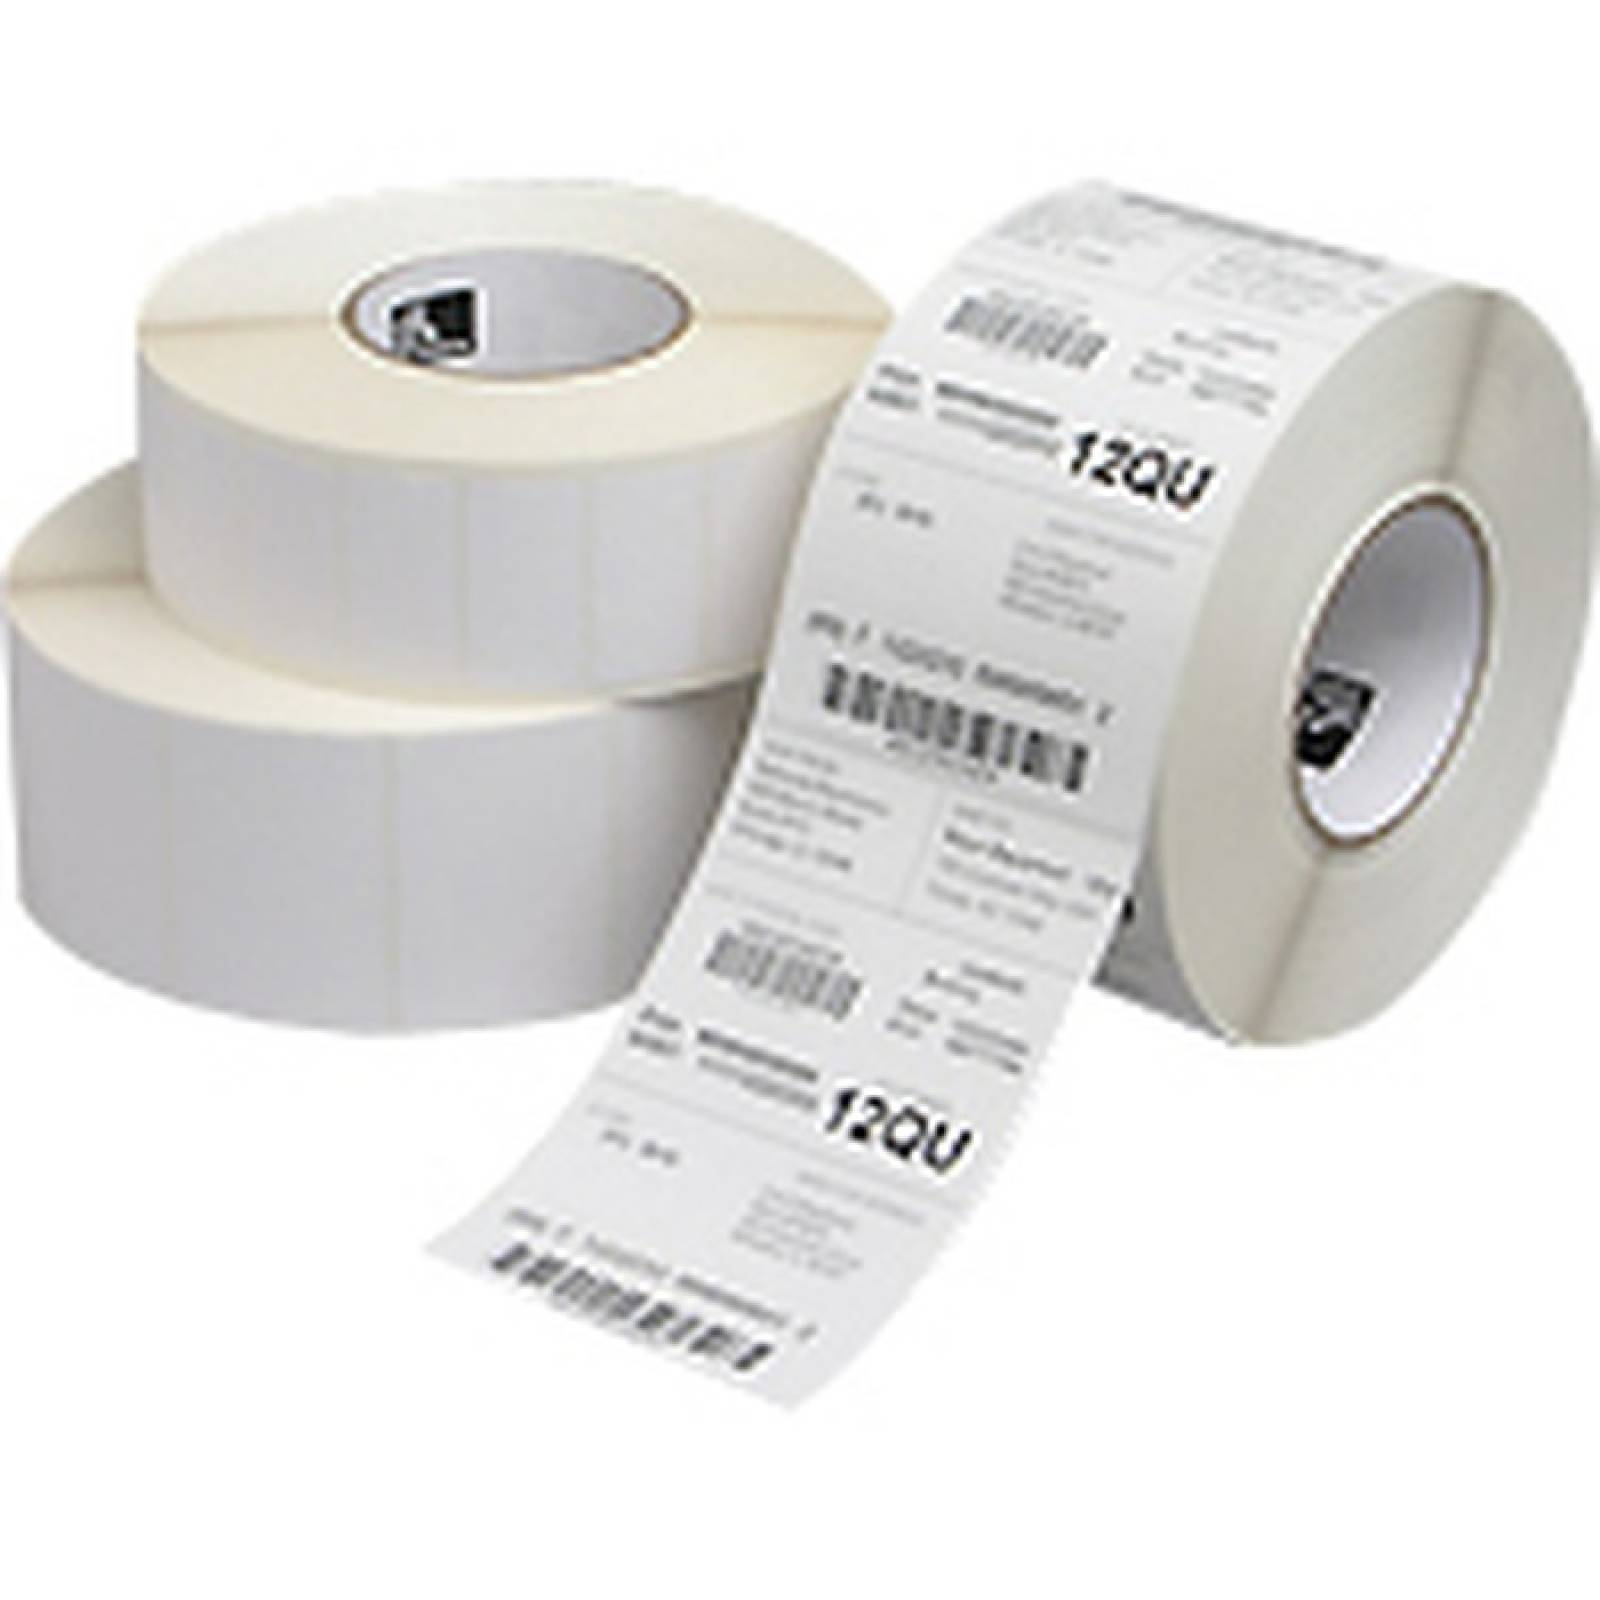 Zebra Label Paper 4x3in Direct Thermal Zebra ZSelect 4000D